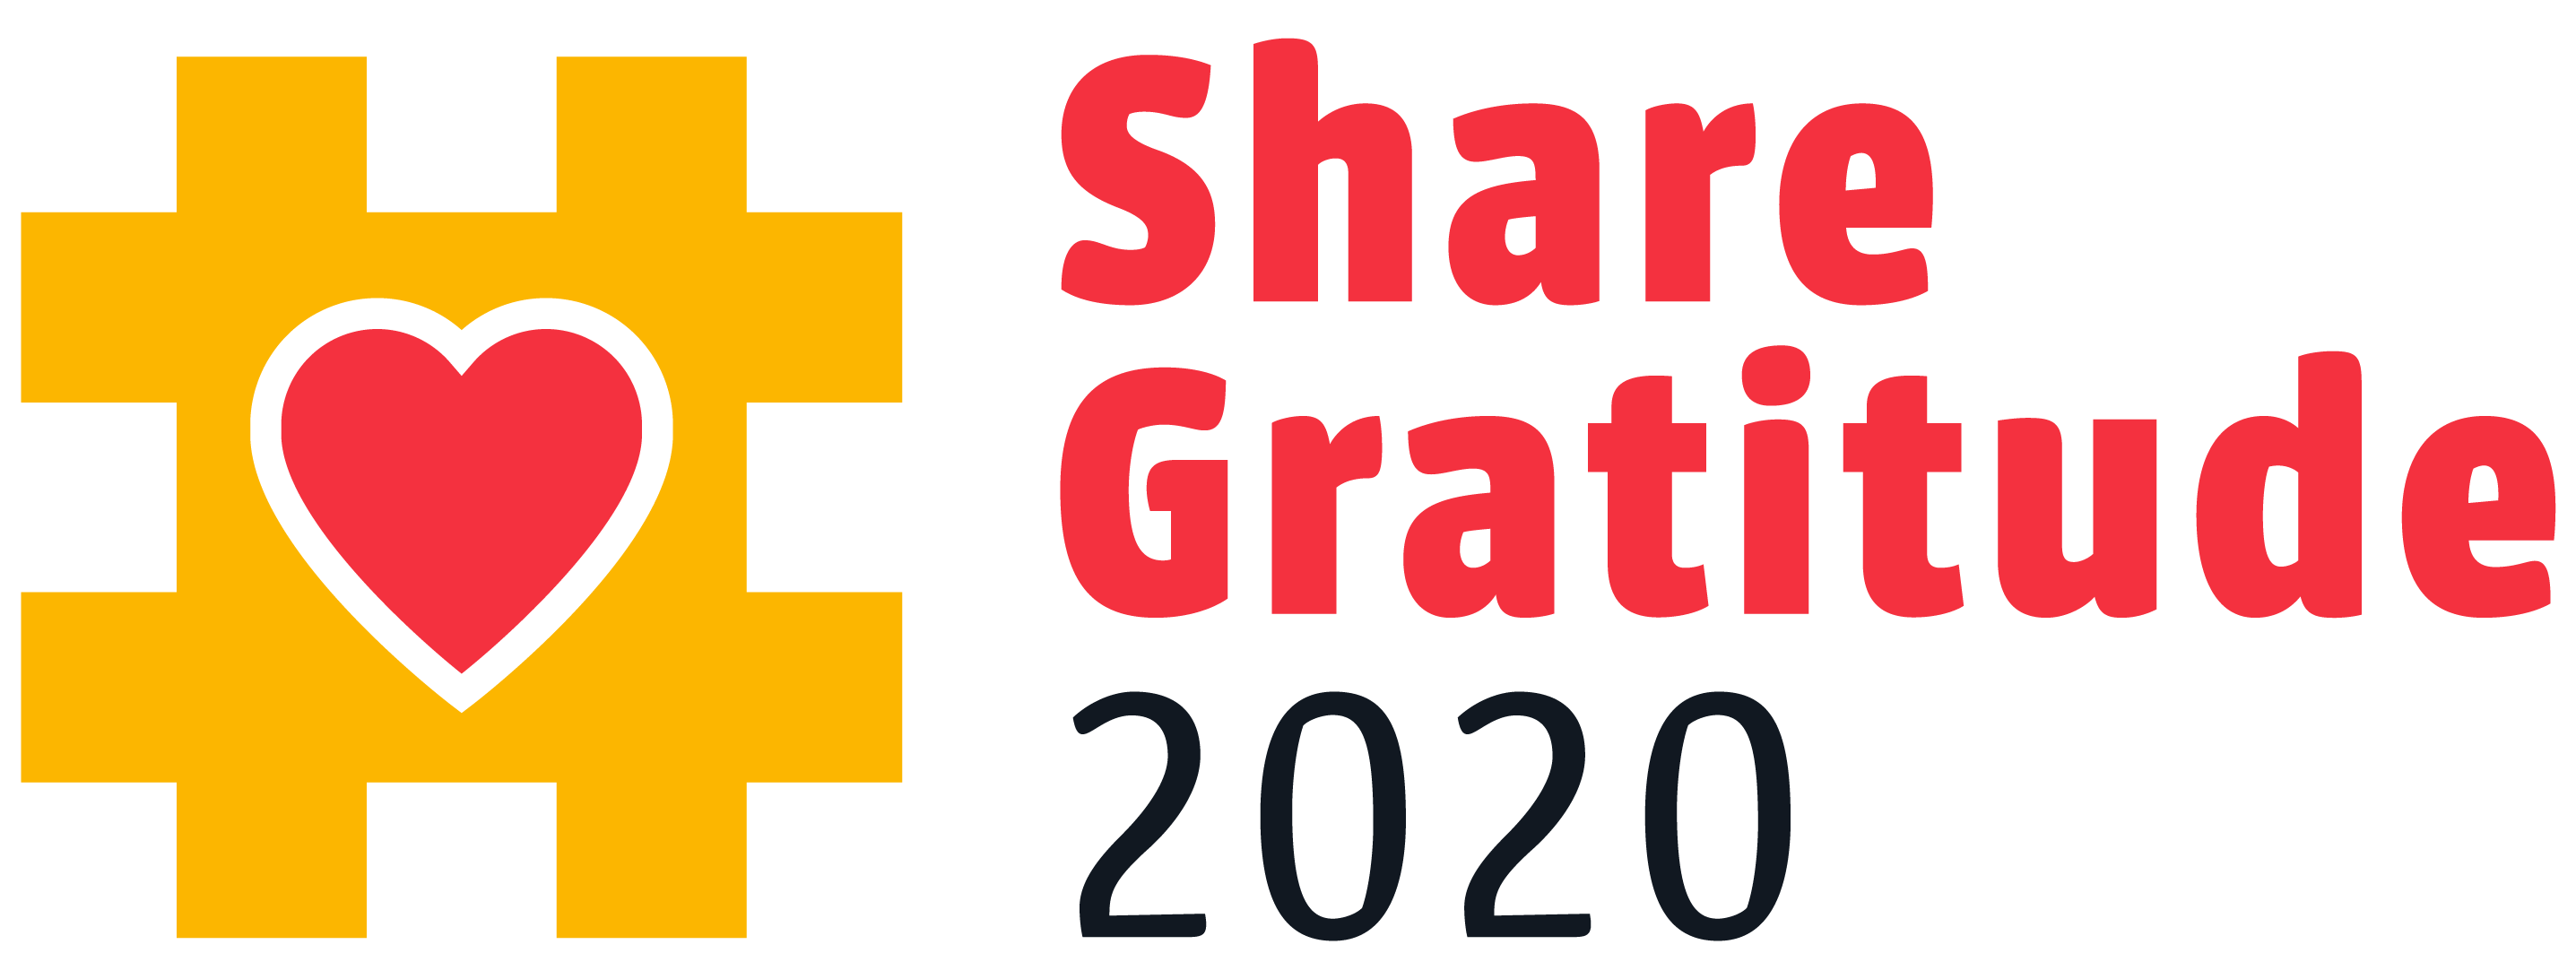 Share Gratitude logo